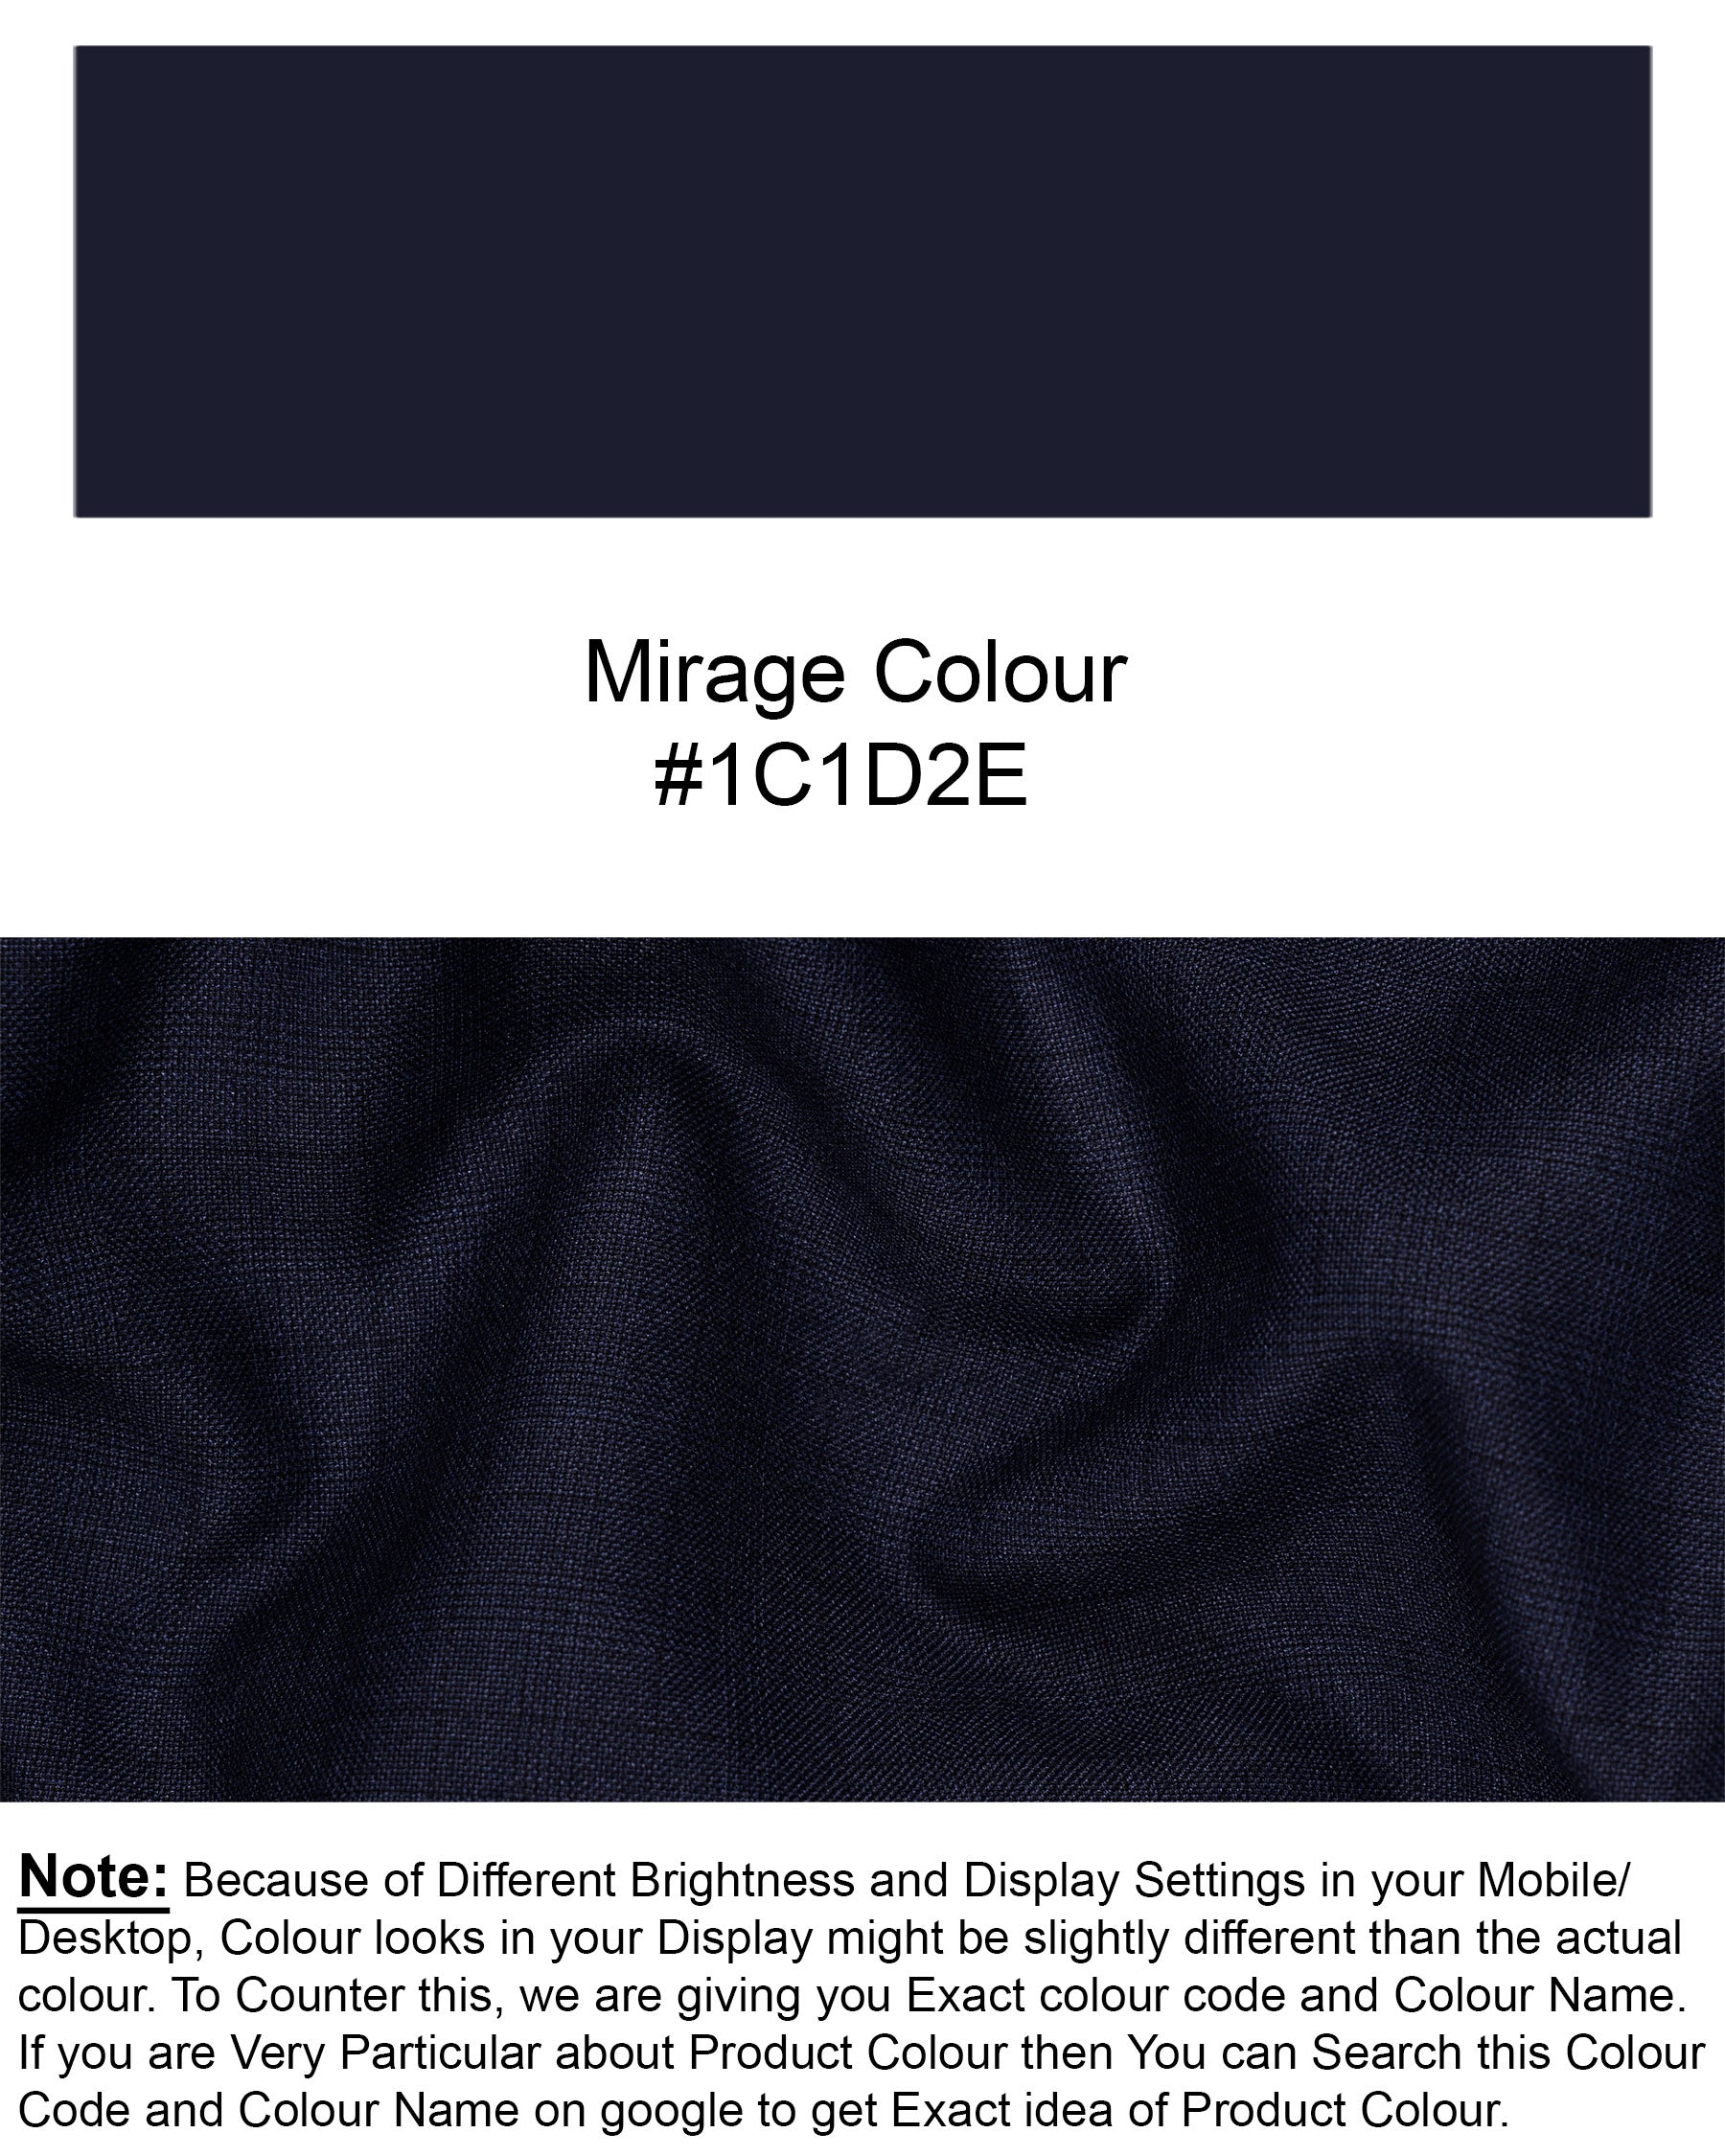 Mirage Blue Super fine Subtle Plaid Cross Buttoned Woolrich Bandgala Suit ST1623-CBG2-36, ST1623-CBG2-38, ST1623-CBG2-40, ST1623-CBG2-42, ST1623-CBG2-44, ST1623-CBG2-46, ST1623-CBG2-48, ST1623-CBG2-50, ST1623-CBG2-52, ST1623-CBG2-54, ST1623-CBG2-56, ST1623-CBG2-58, ST1623-CBG2-60